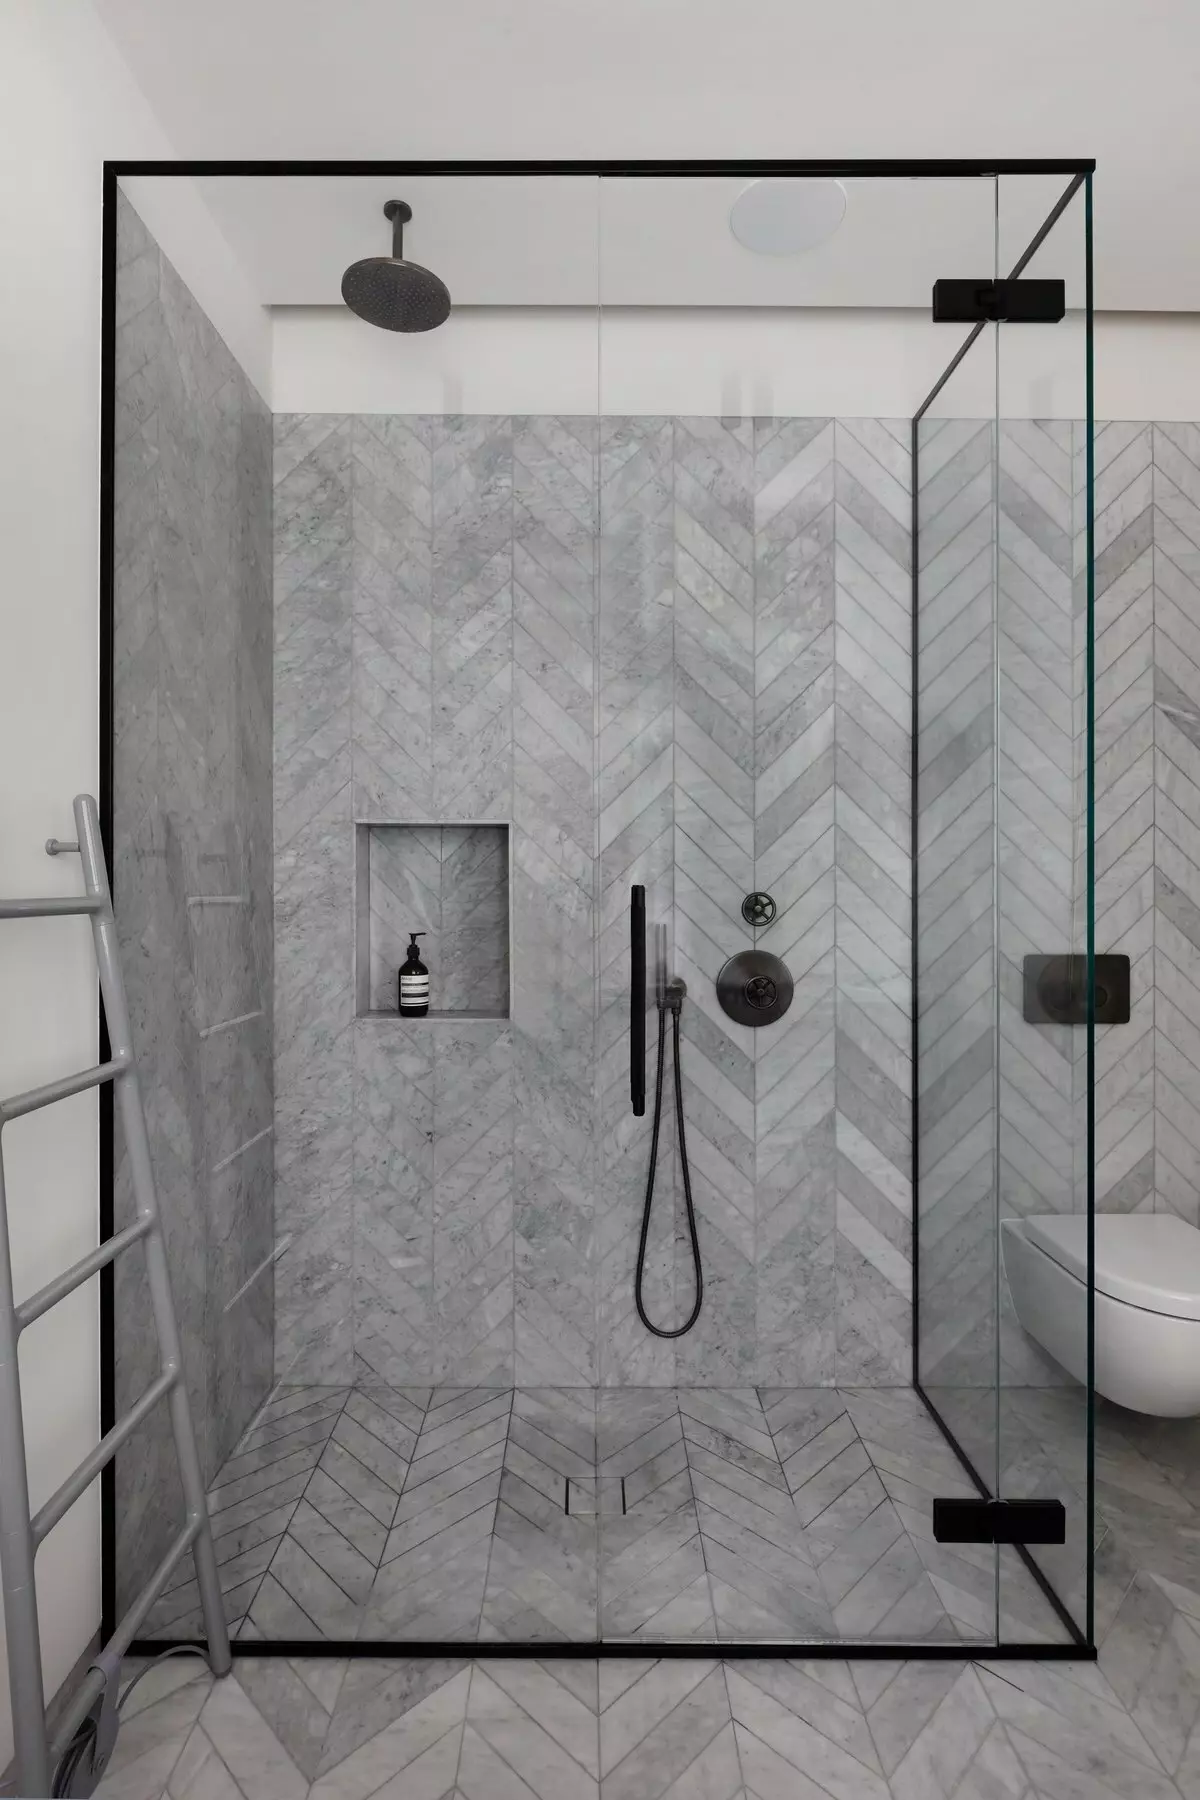 Ариун цэврийн өрөөнд шүршүүрт орох (86 зураг): Угаалгын өрөөний загвар: угаалгын өрөөний дизайны сонголтууд тавиур, плита, плита, төслүүд 21384_48